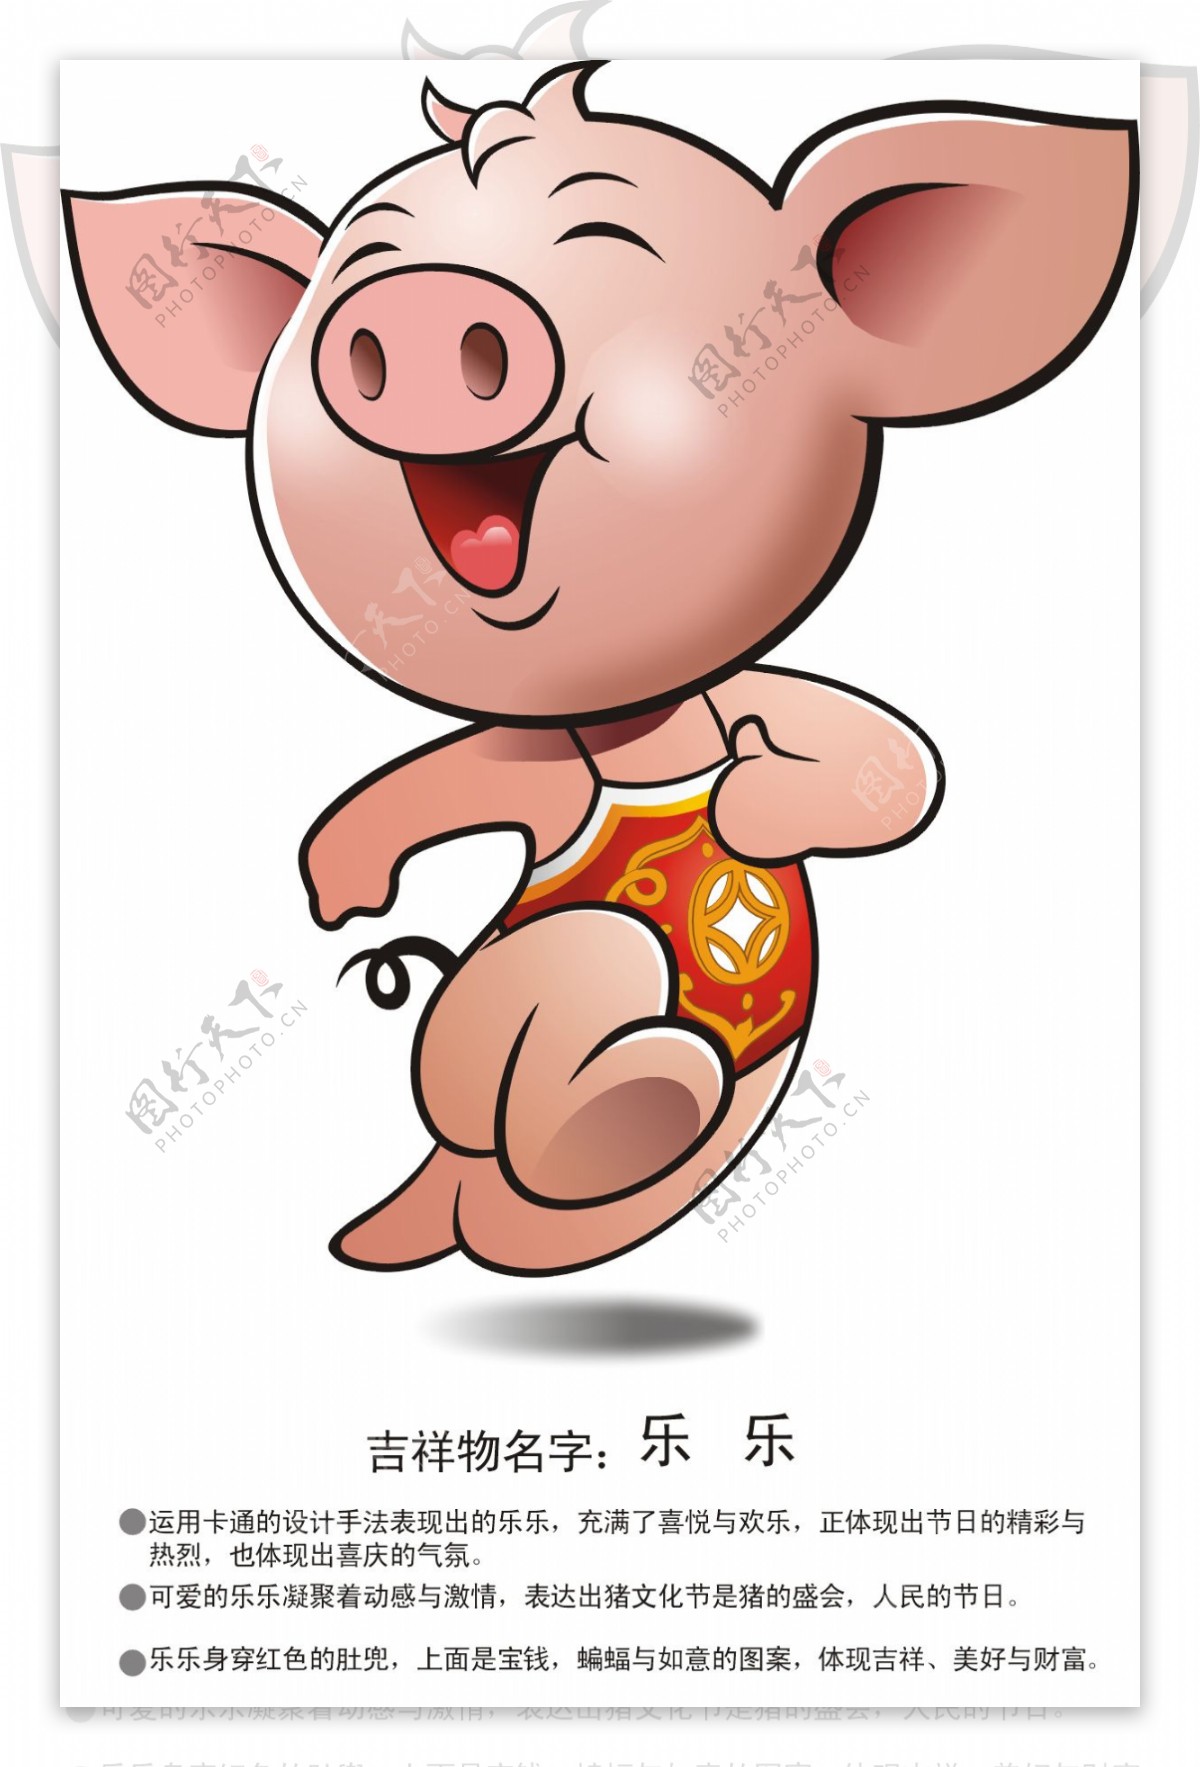 陆川猪文化节标志图片